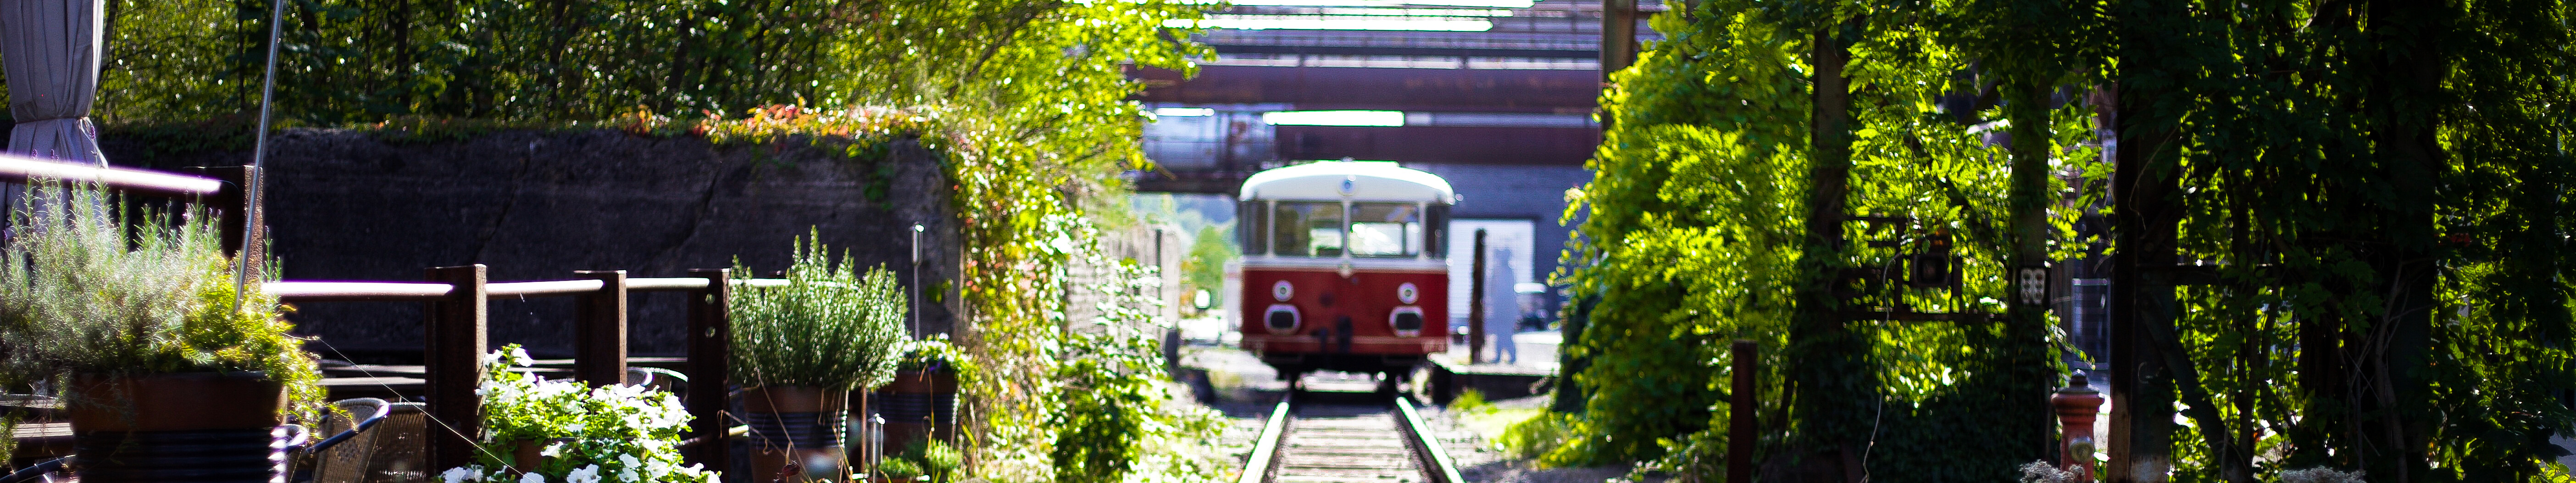 Ein alter Eisenbahnwaggon fährt auf den Gleisen durch die begrünte Außenanlage des LWL-Industriemuseums Henrichshütte in Hattingen. © Tourismus NRW e.V.